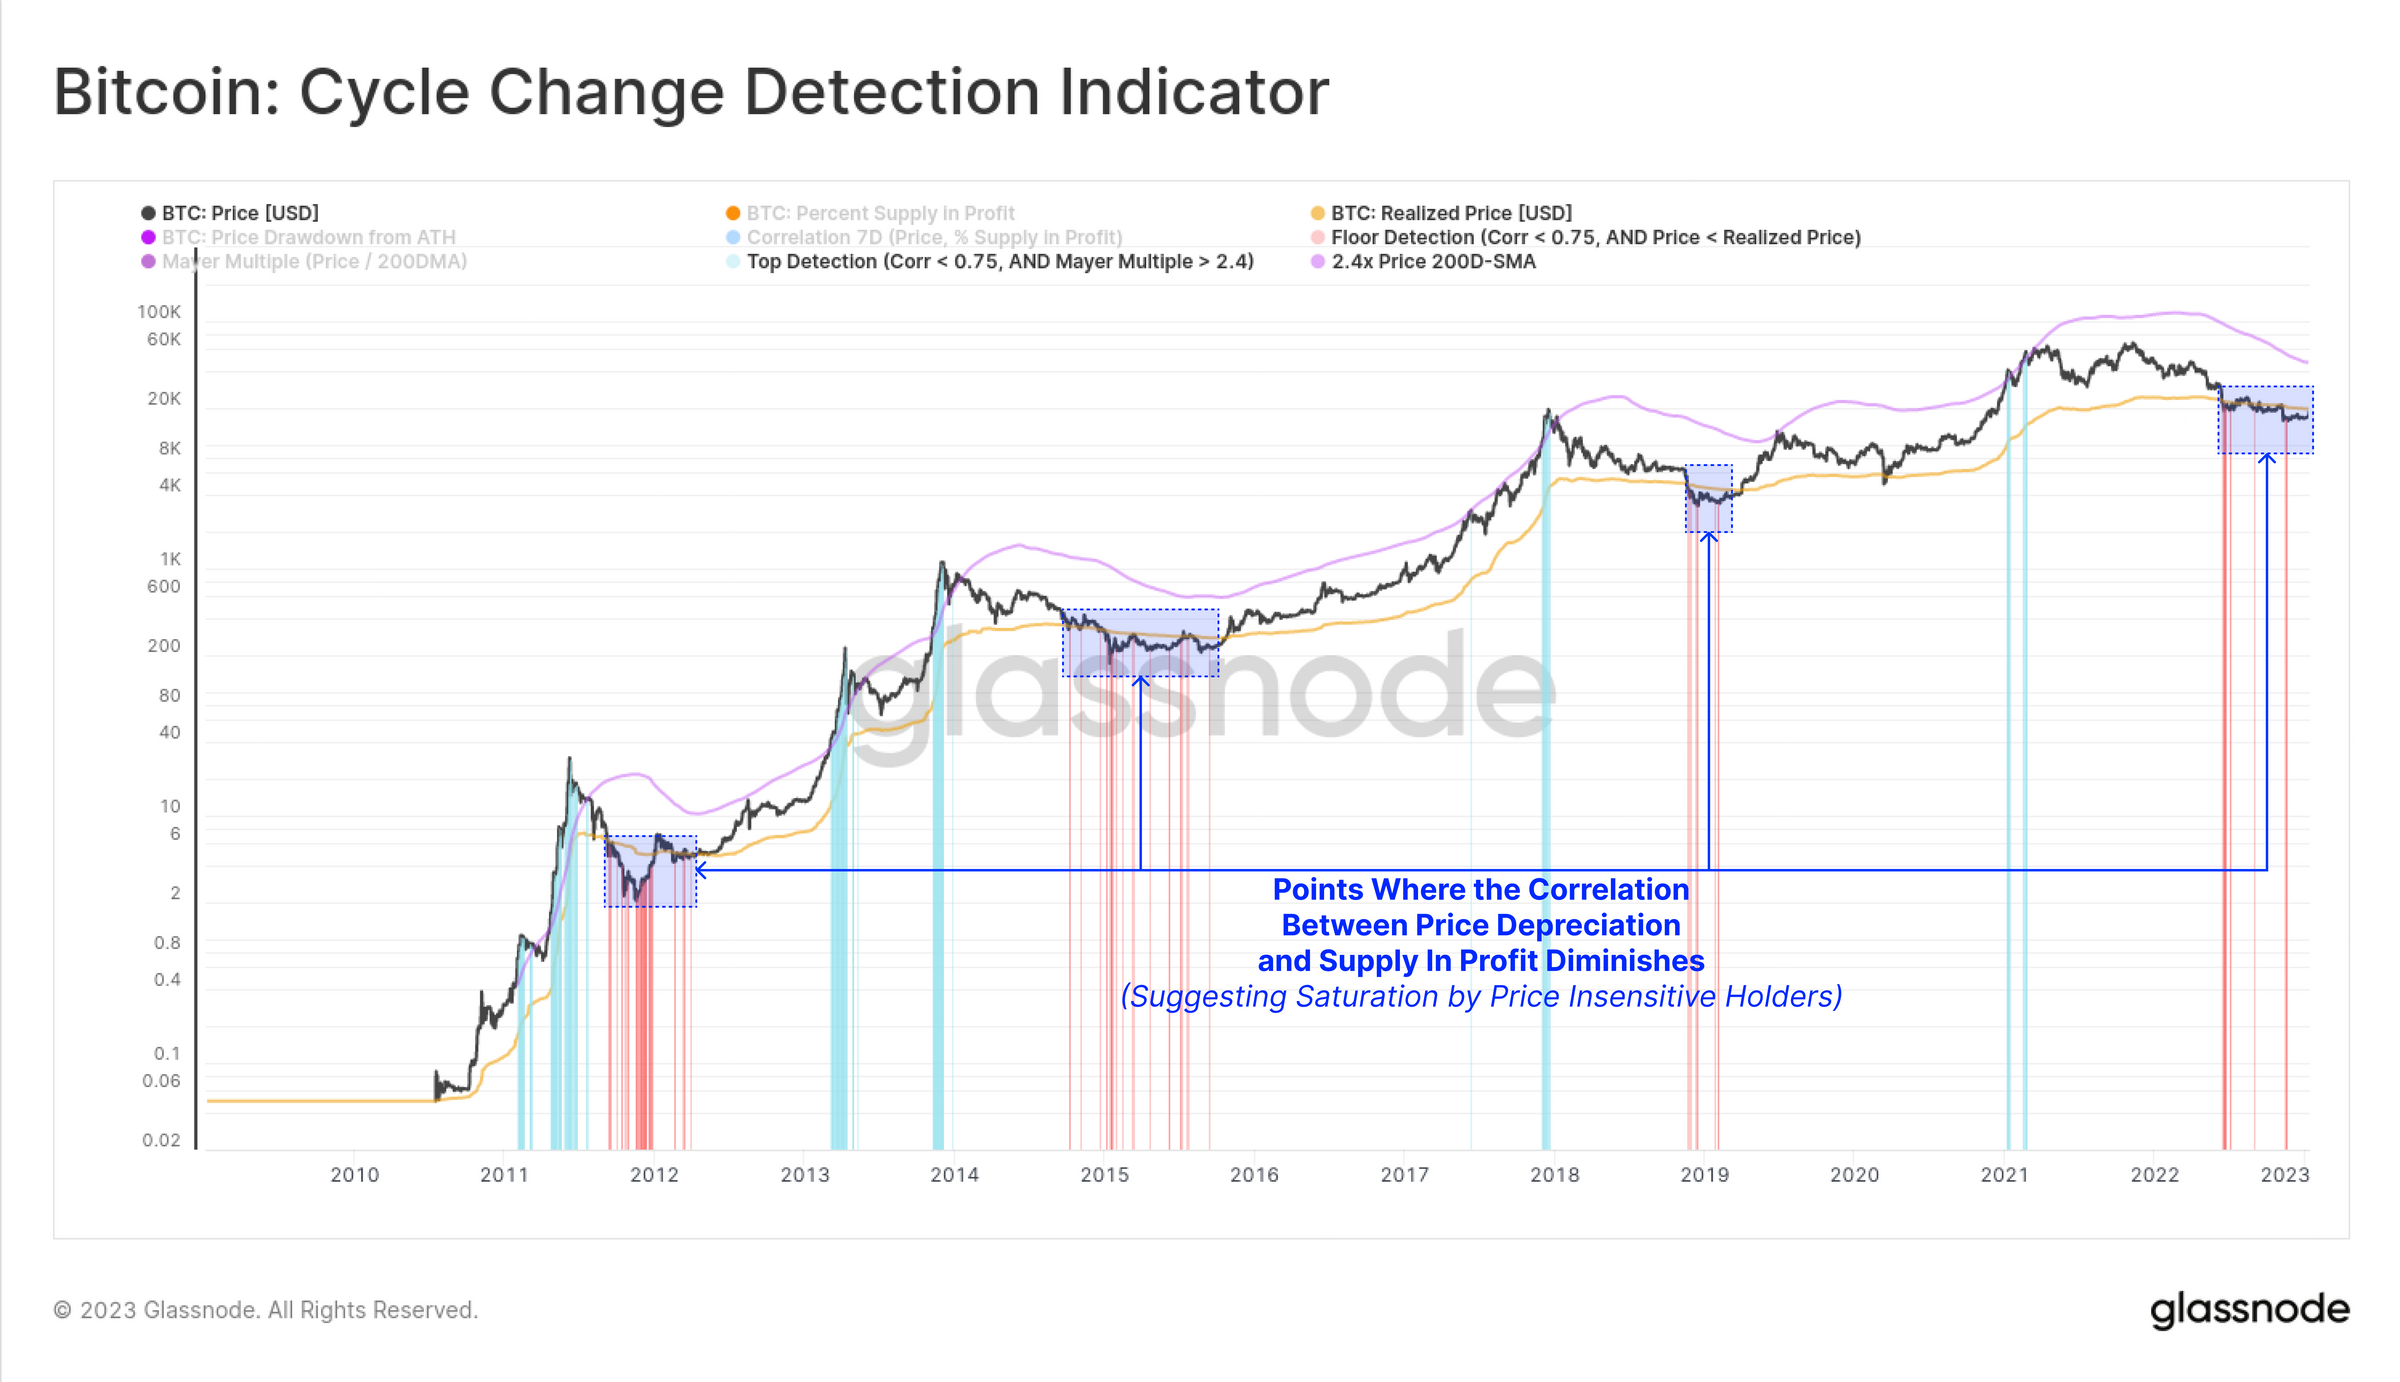 Cycle Change Detection Indicator